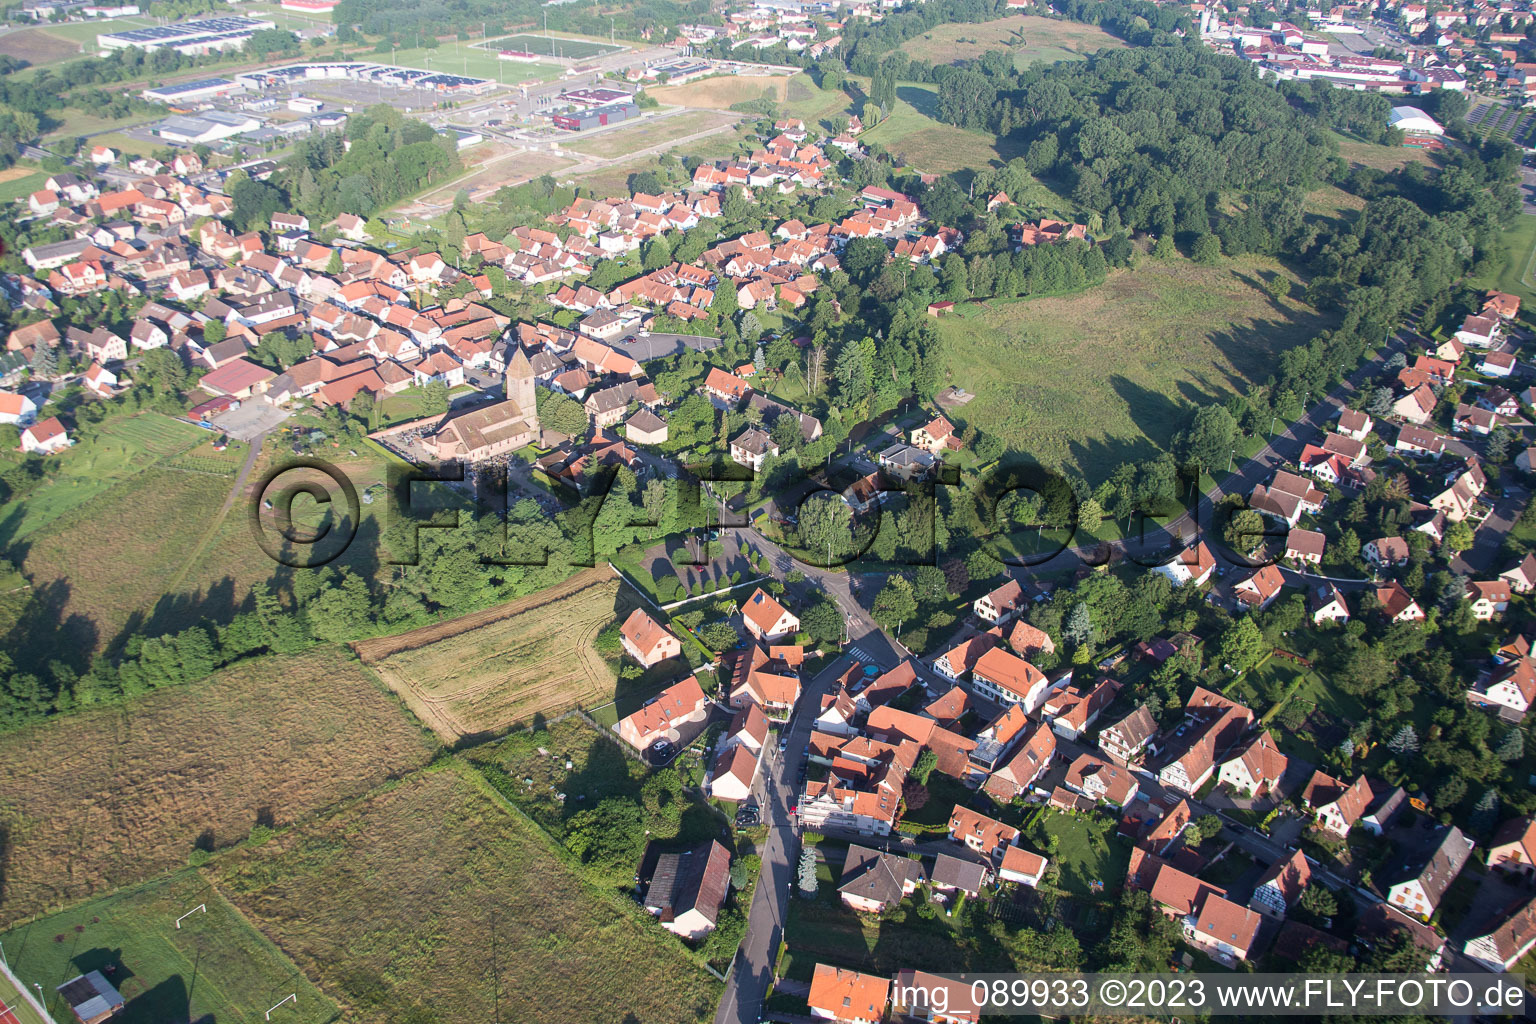 Altenstadt im Bundesland Bas-Rhin, Frankreich aus der Drohnenperspektive